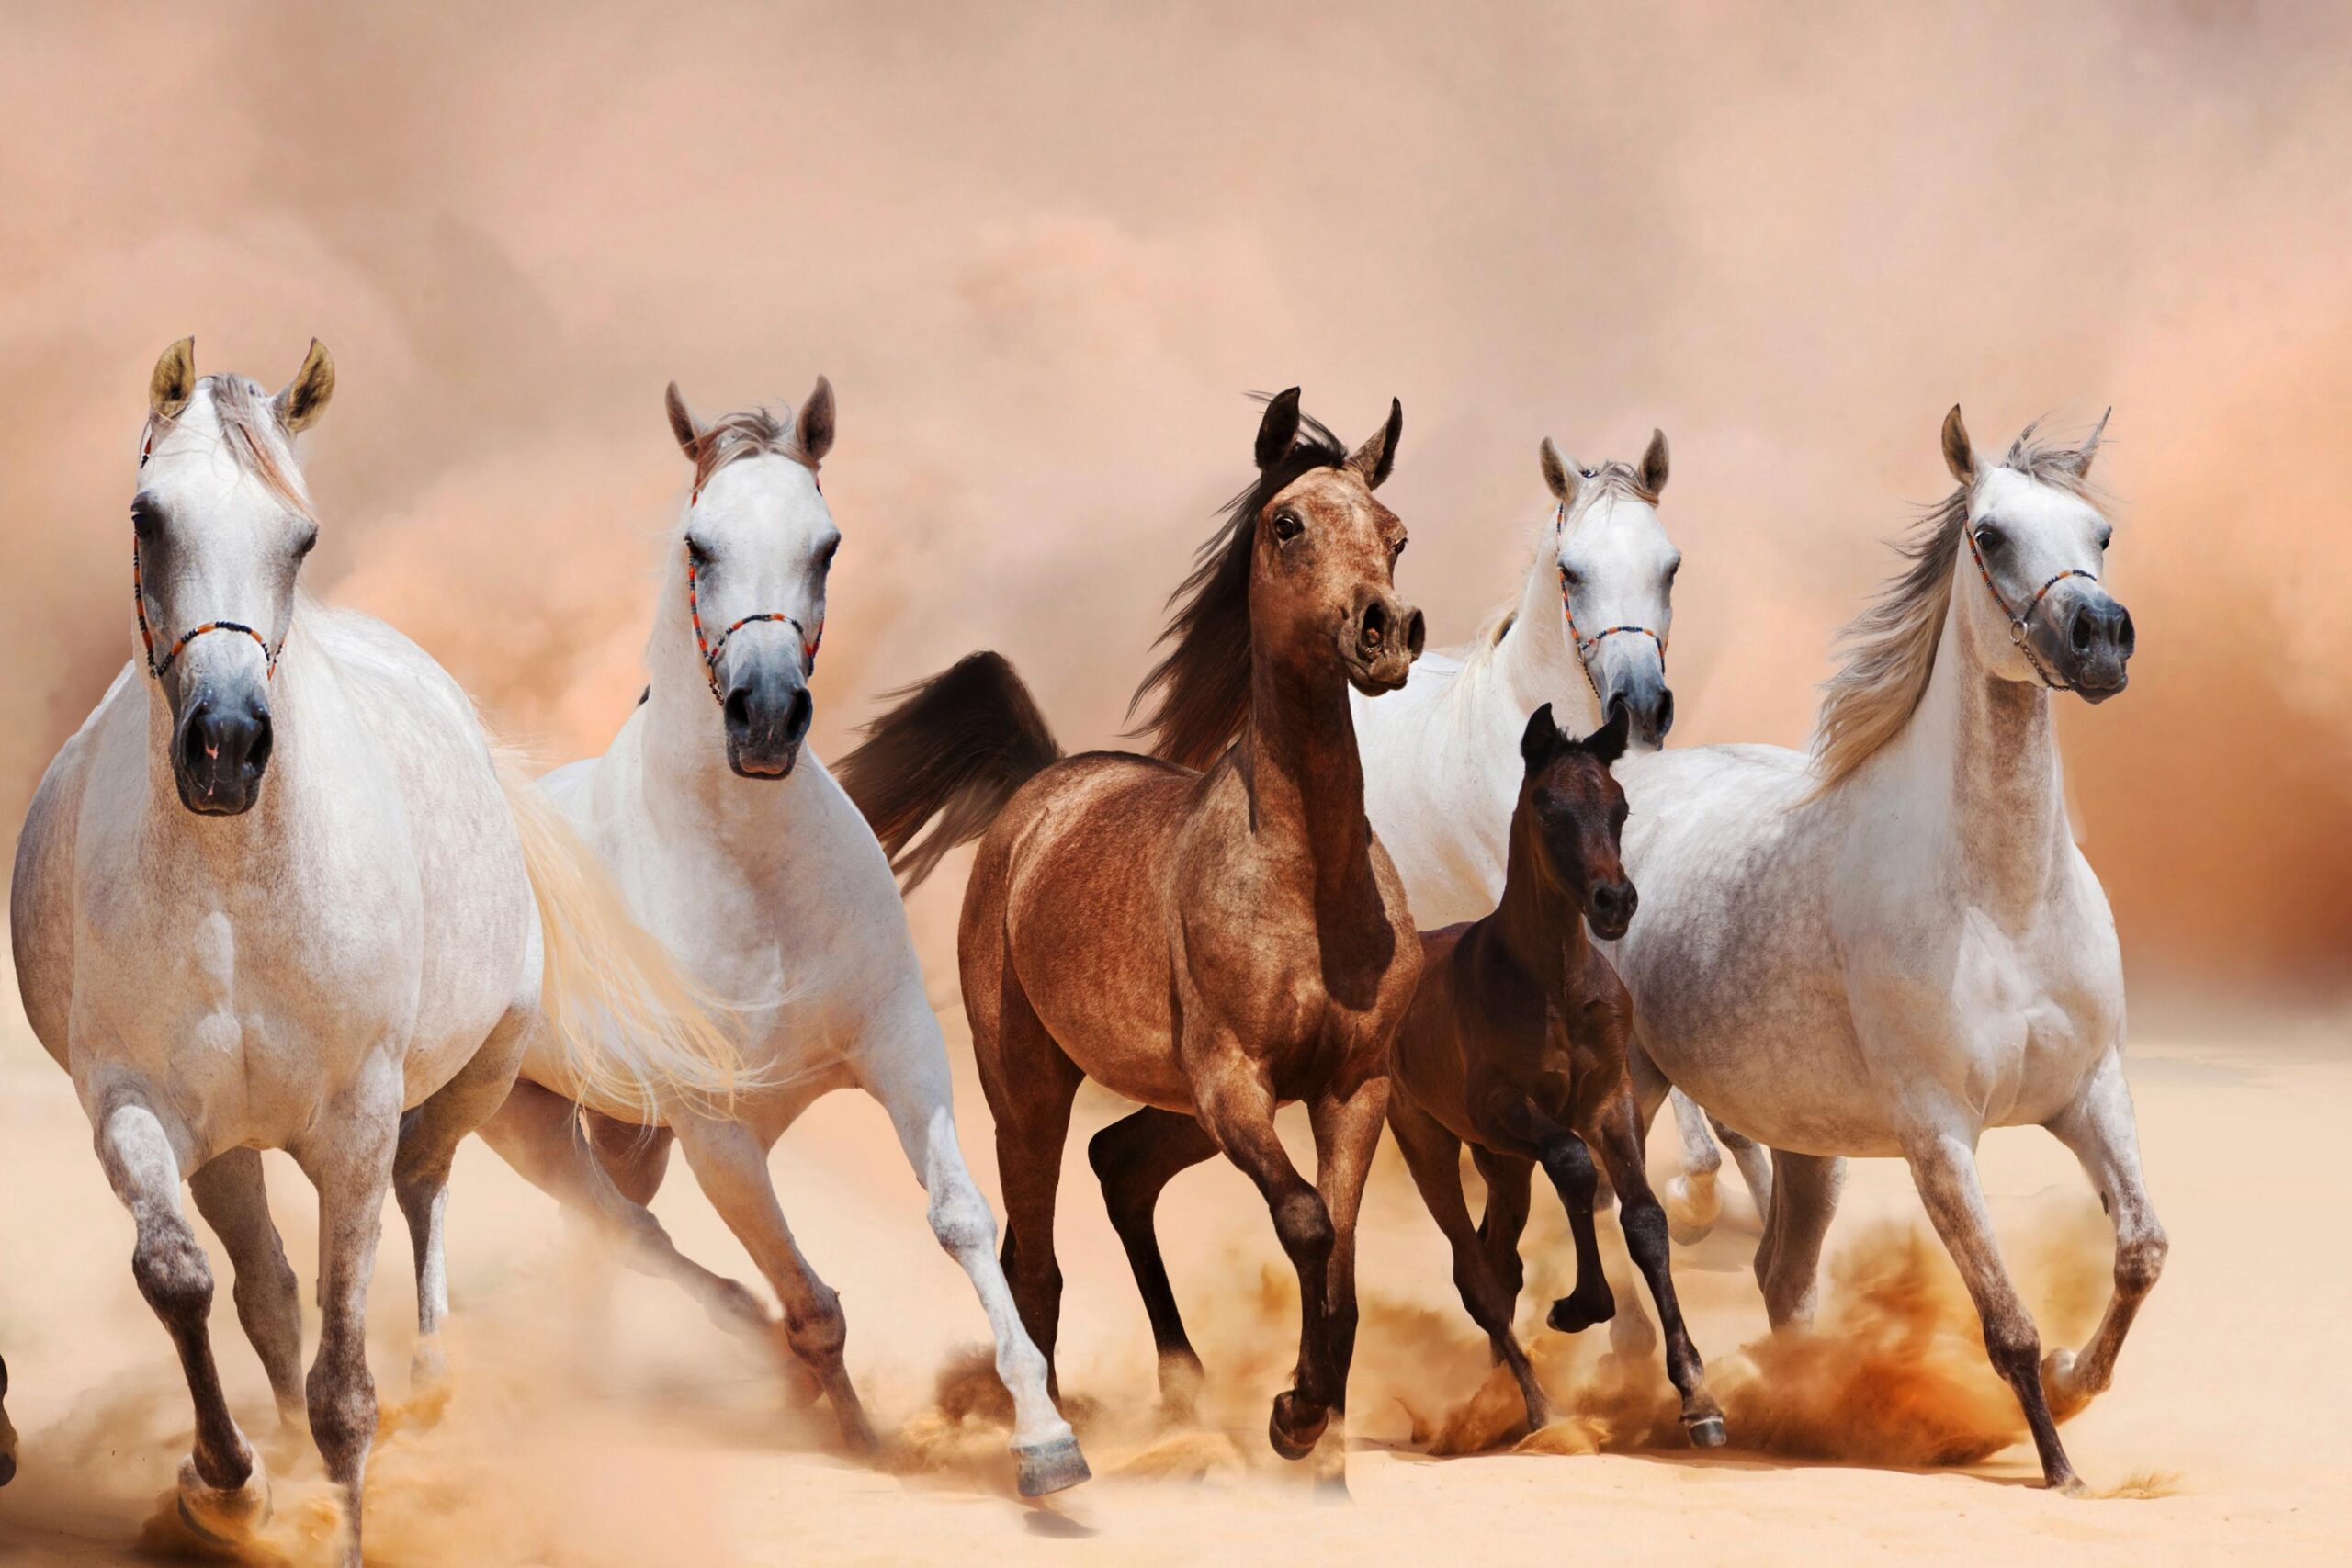 Najdi koně a jejich vlastnosti 1 stupnice 1 - Tajemství výkladu snů